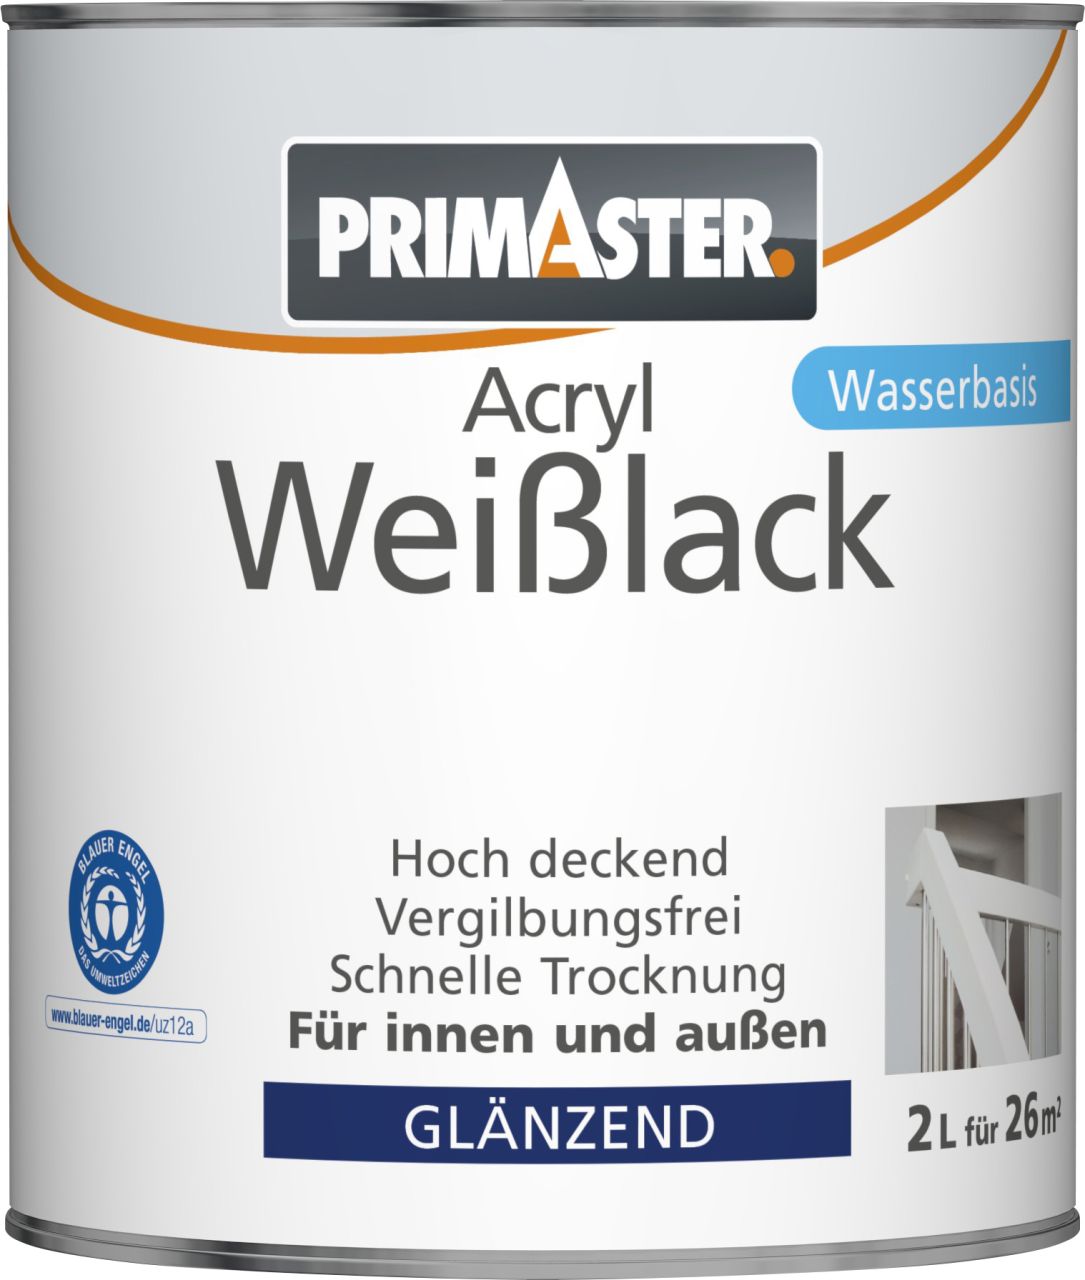 Primaster Acryl Weißlack 2 L glänzend von Primaster